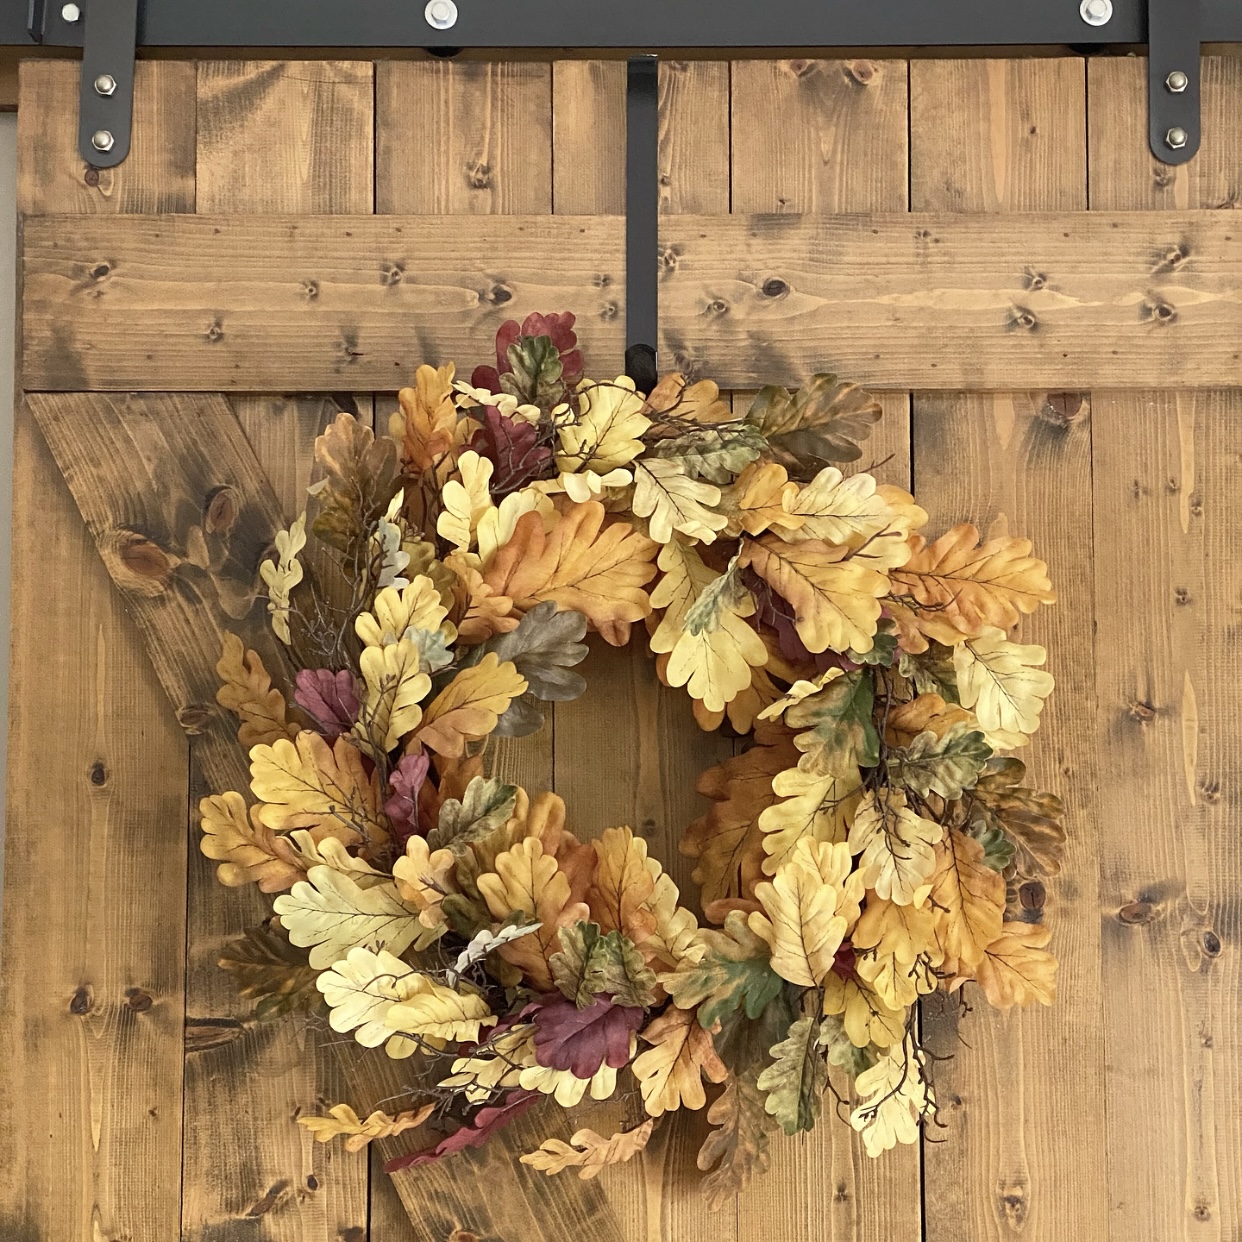 Fall wreath on the barn door.